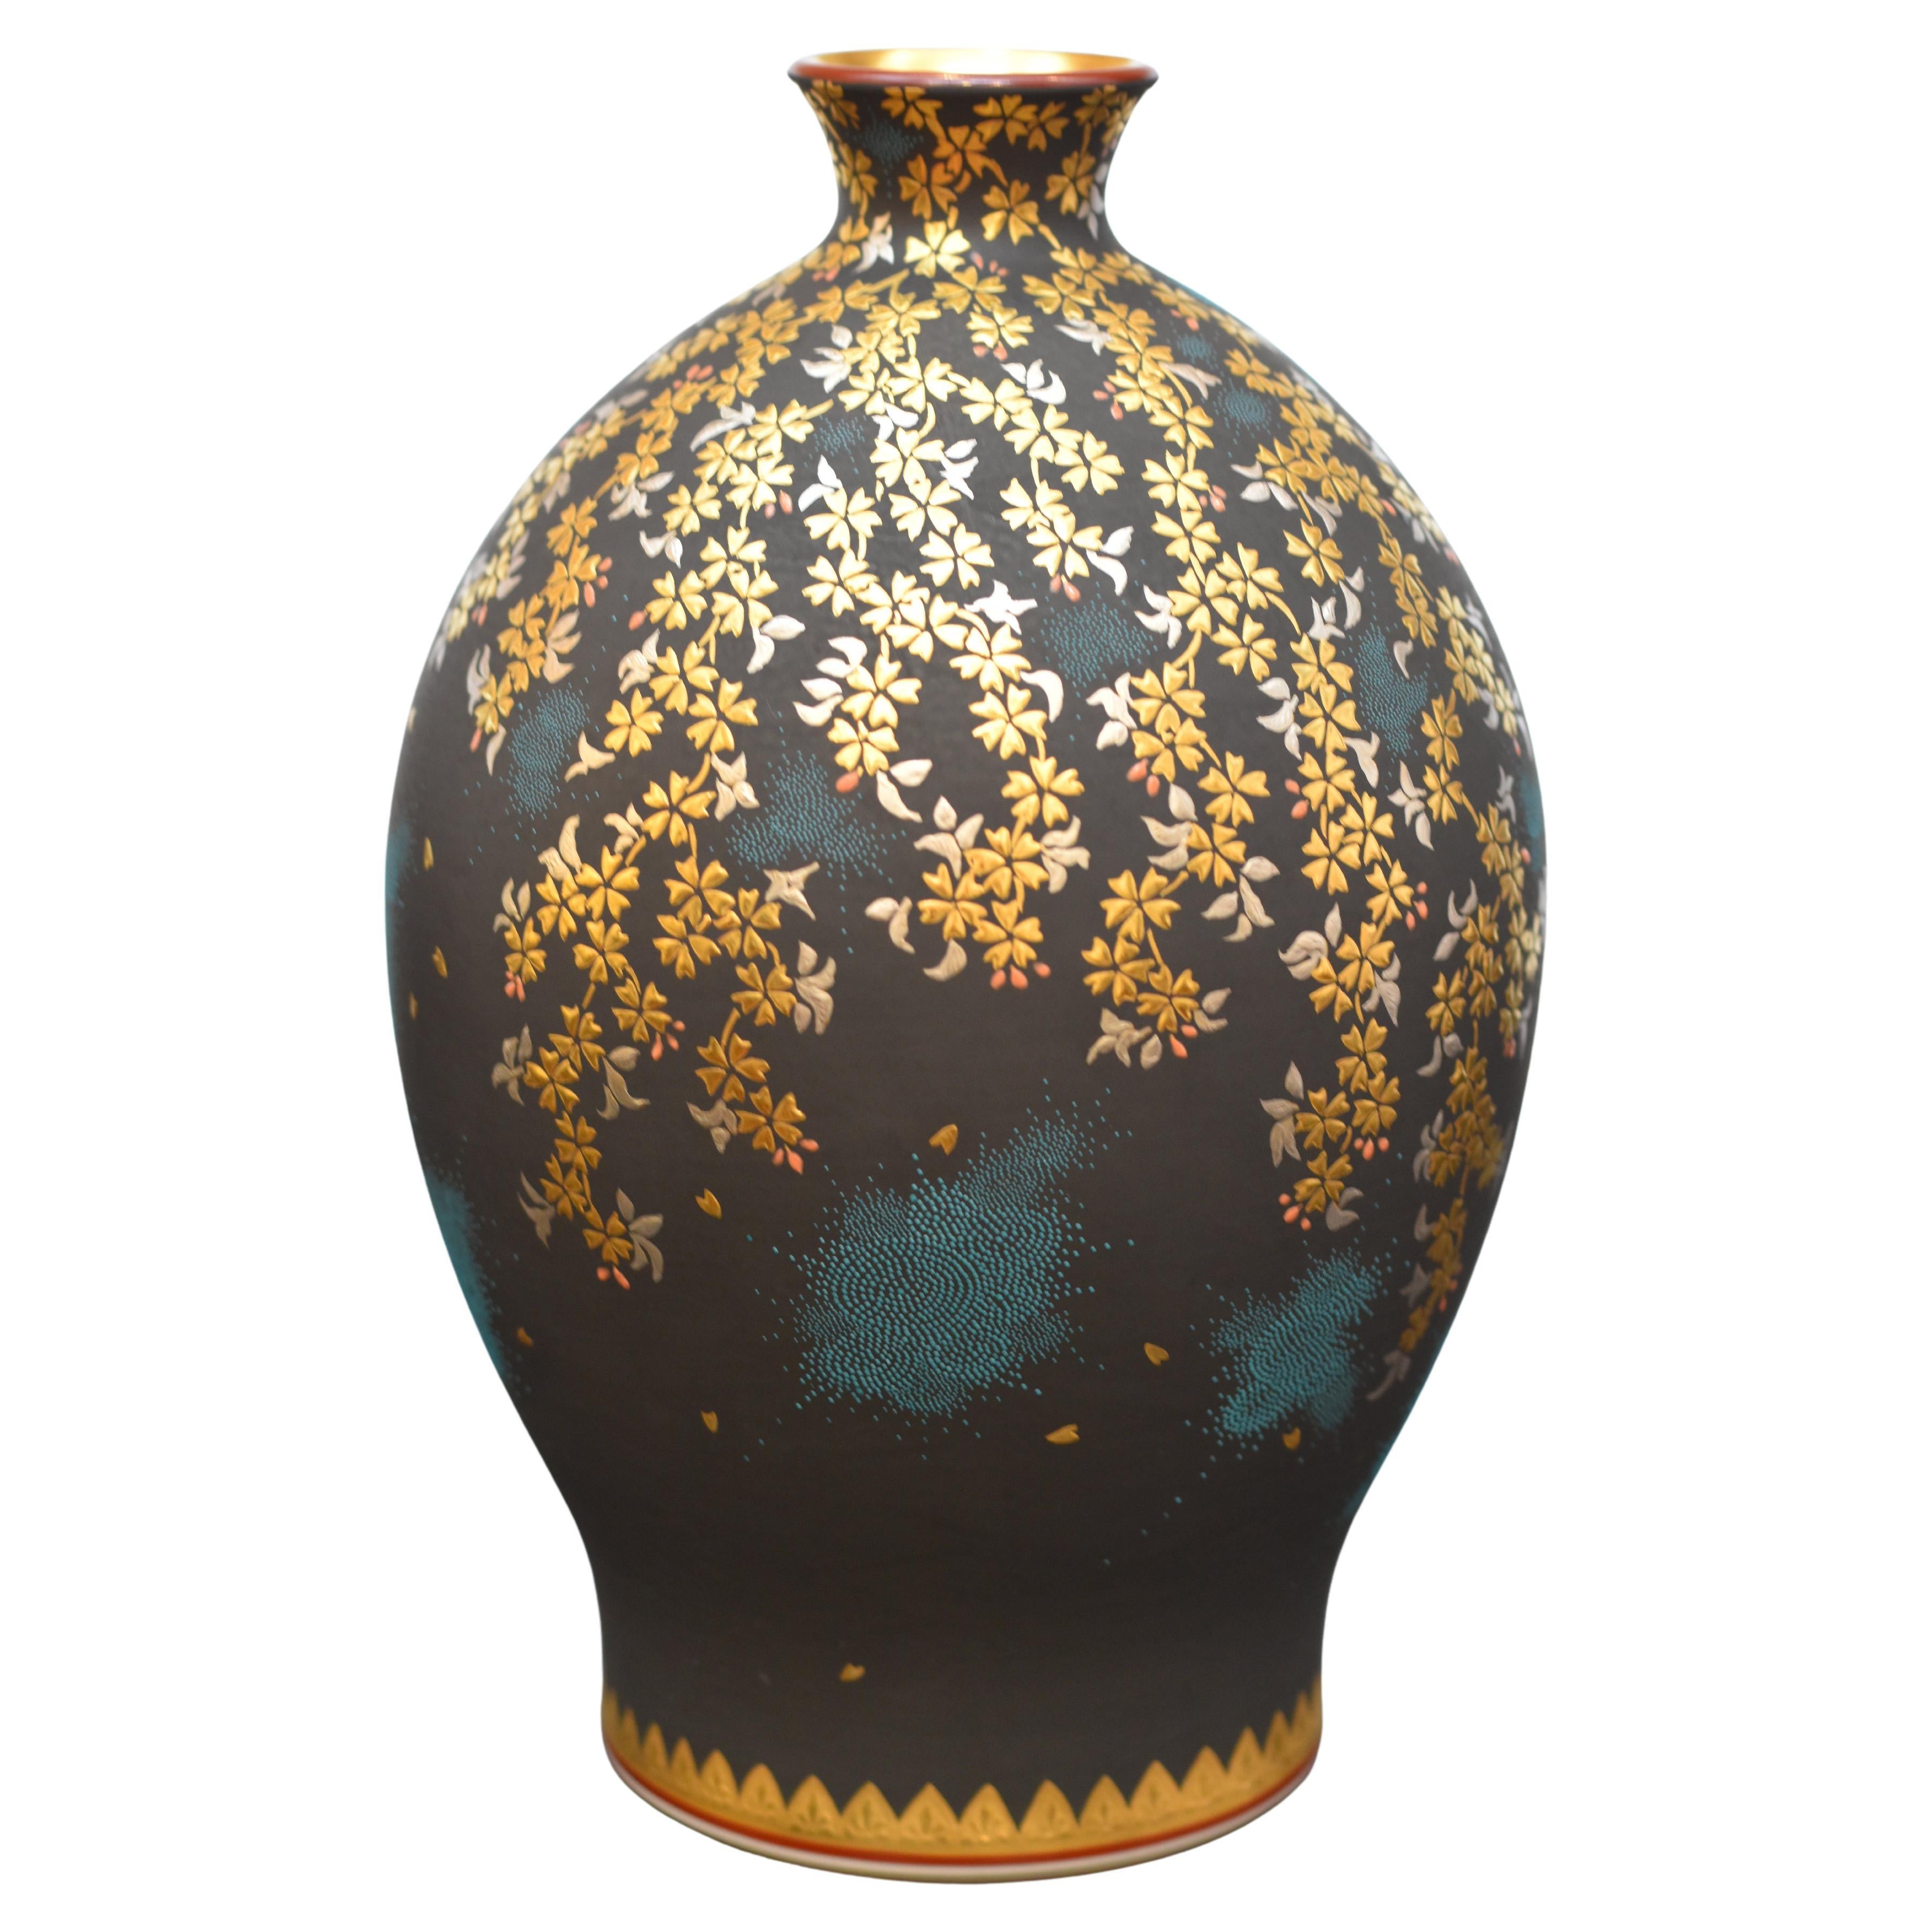 Exquisite signierte japanische Porzellanvase in Museumsqualität,  ein Meisterwerk des hochgelobten und preisgekrönten Porzellankünstlers der dritten Generation aus der japanischen Region Kutani, das eine Kaskade von Kirschblüten in reinem Gold und